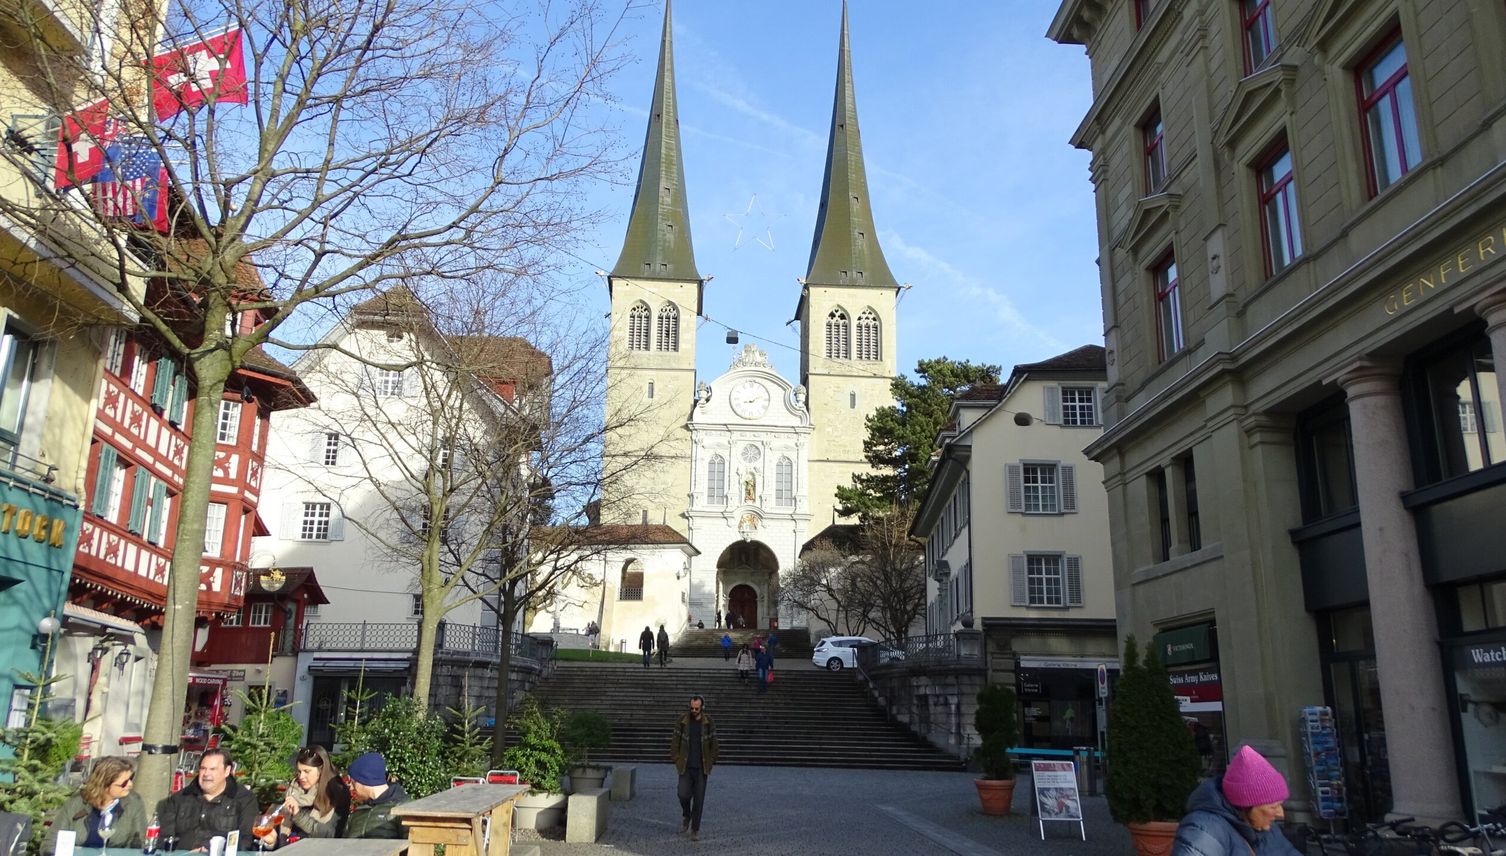 Katholische Kirche Luzern will Missbrauchsopfern helfen